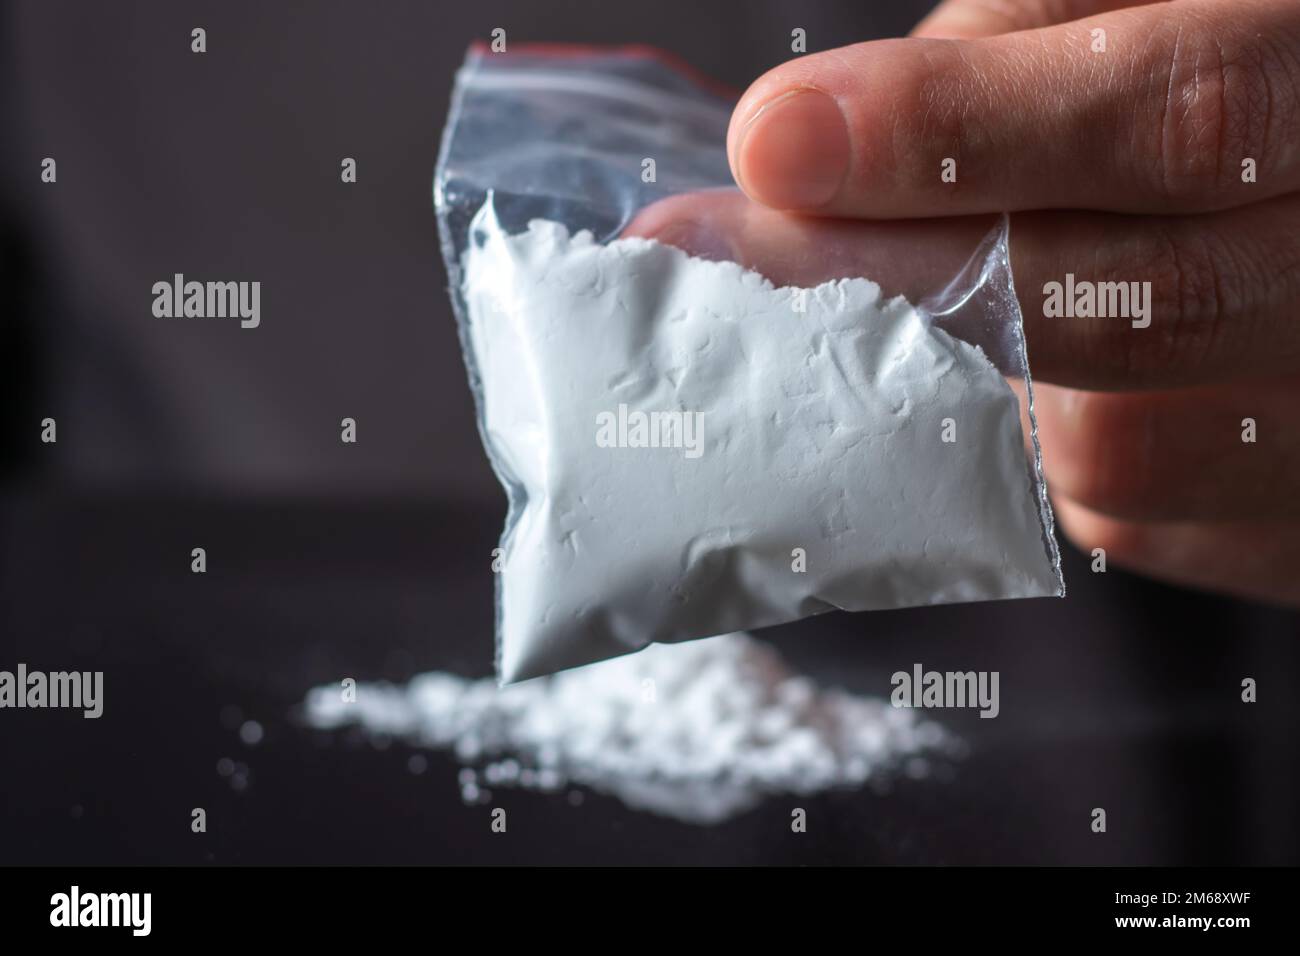 Concepto de adicción a las drogas. La mano del hombre sostiene el paquete o  la bolsa de plástico con la cocaína u otras drogas, el abuso de drogas y el  concepto de